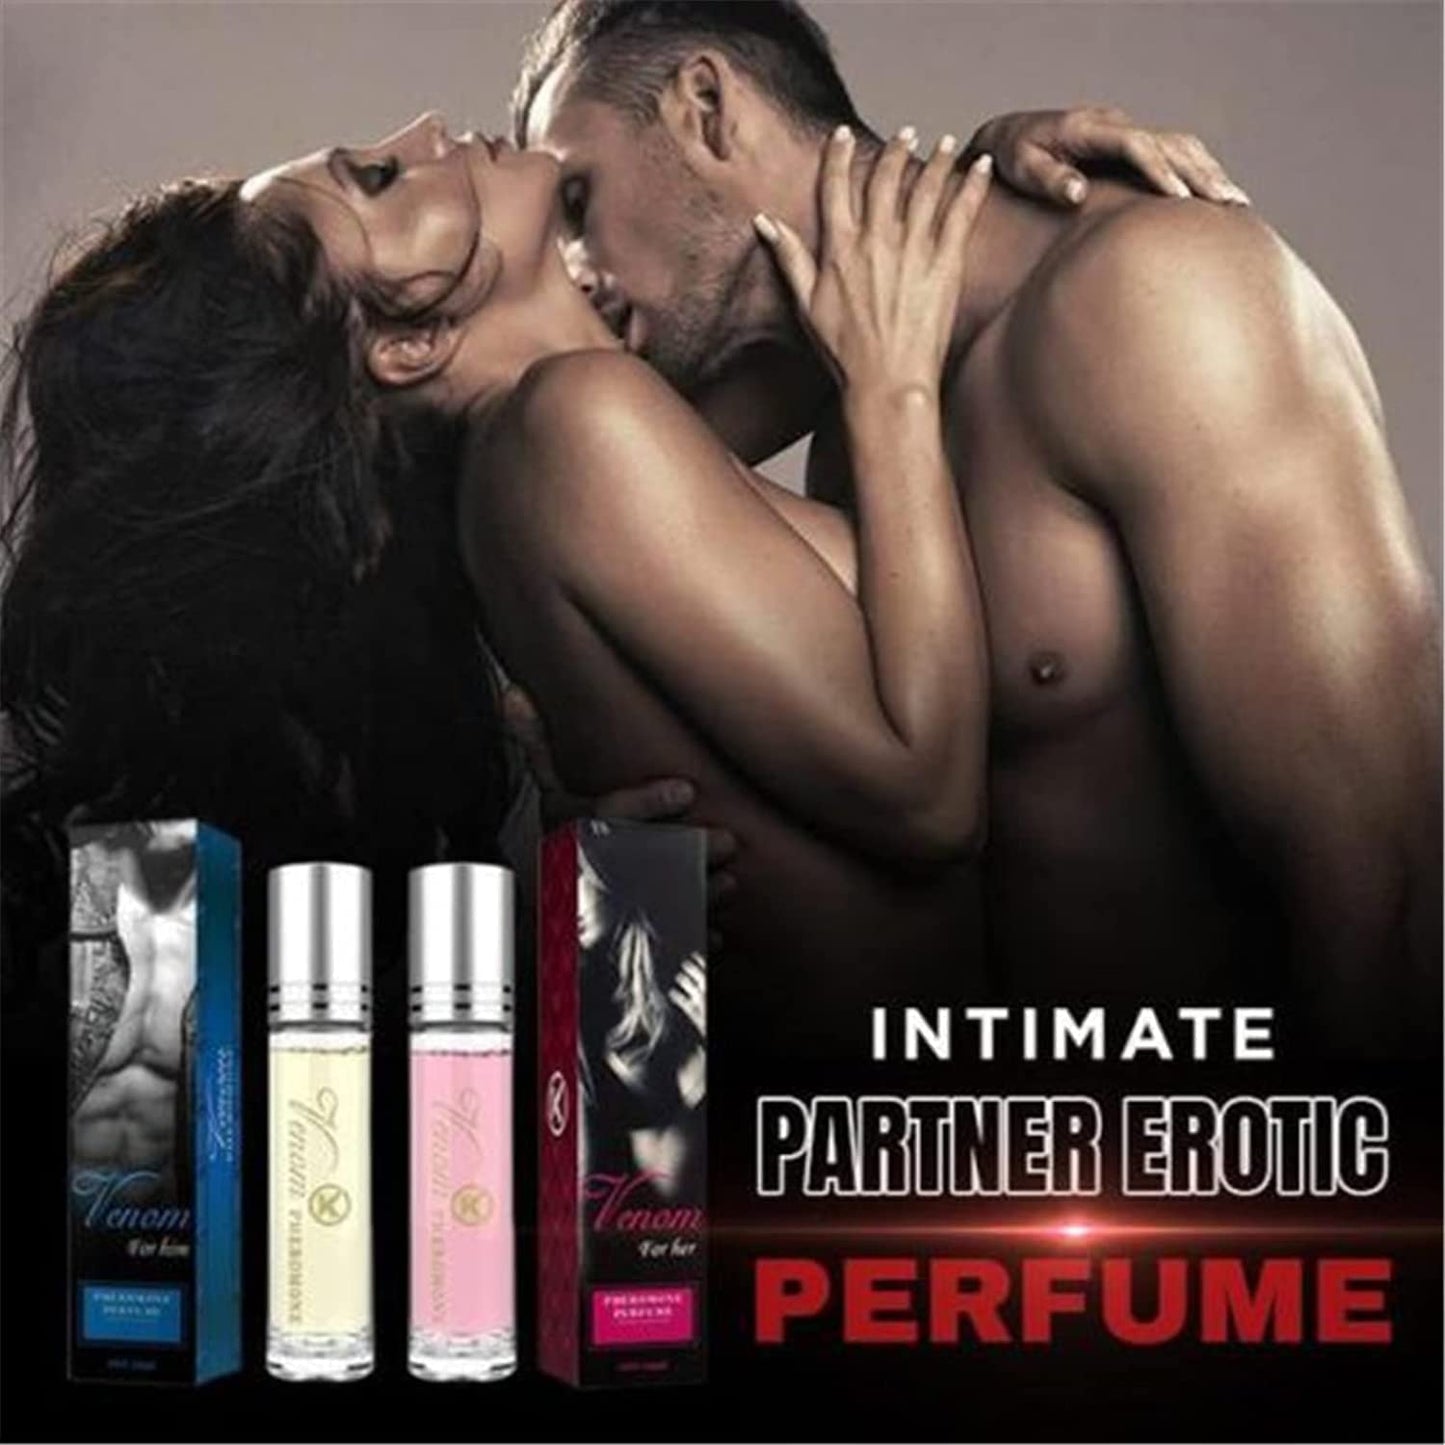 Parfum Lunex Phero, Huile de phéromone pour femme pour attirer les hommes, Parfum Venom, Roll On Huiles de phéromone pour femme, Parfum Pharamon pour femme, Huile essentielle de phéromone, Huile d'essence